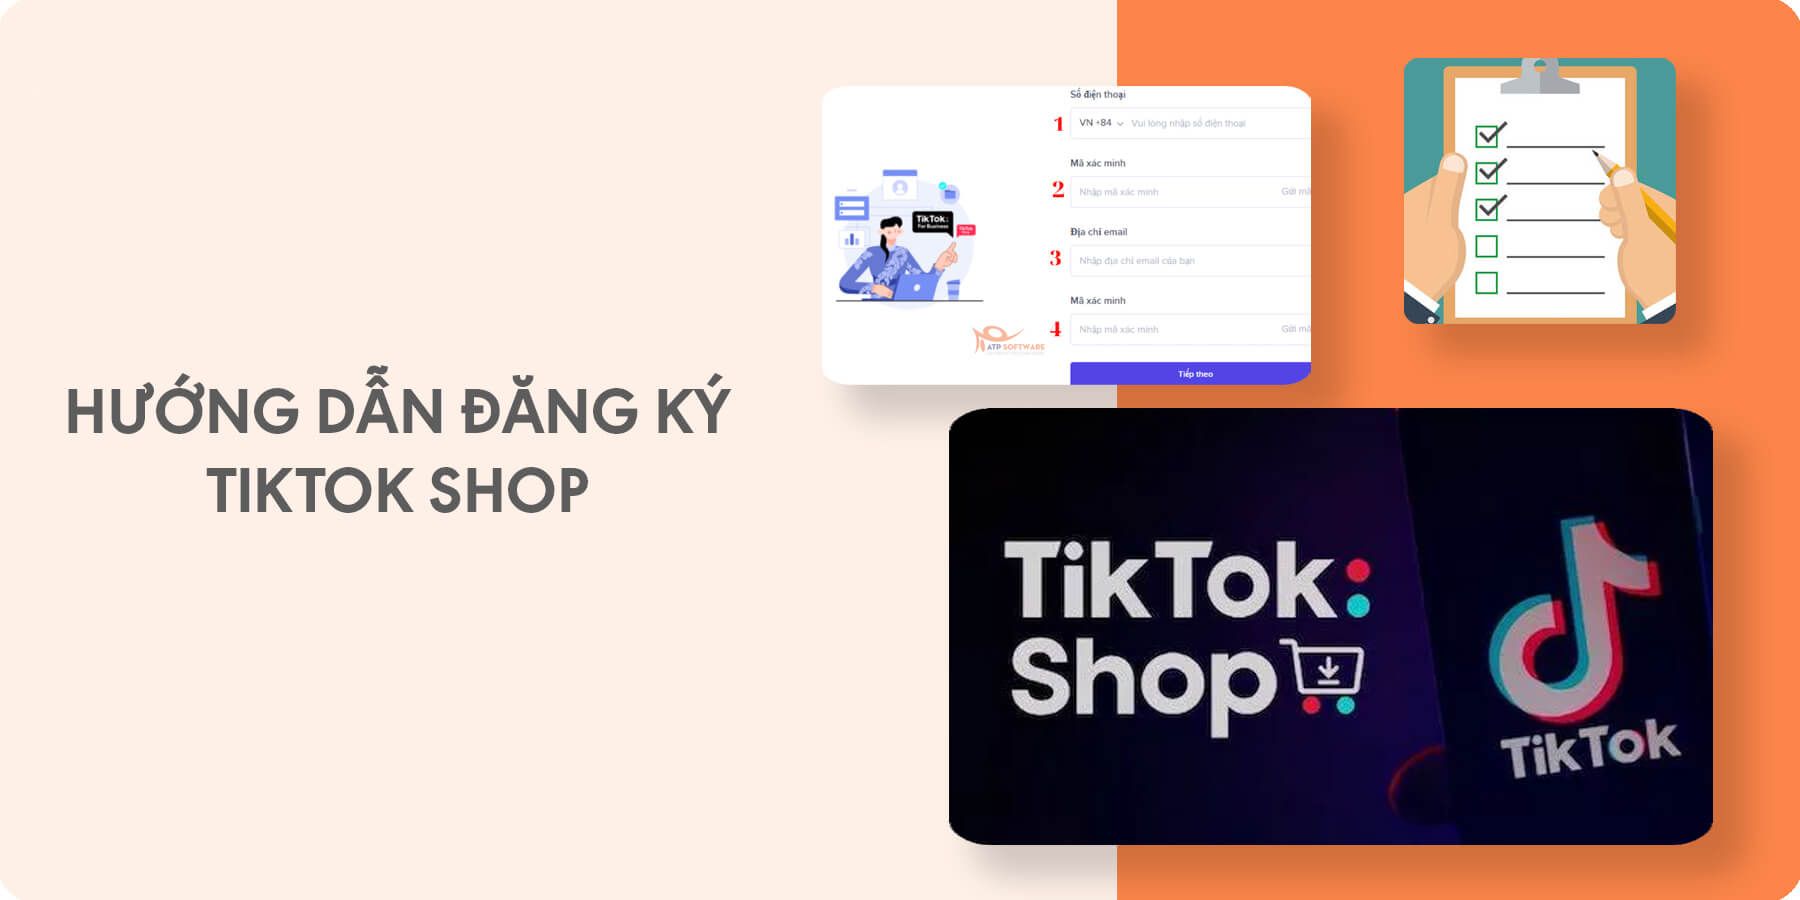 Hướng dẫn đăng ký TikTok Shop và giải đáp thắc mắc liên quan